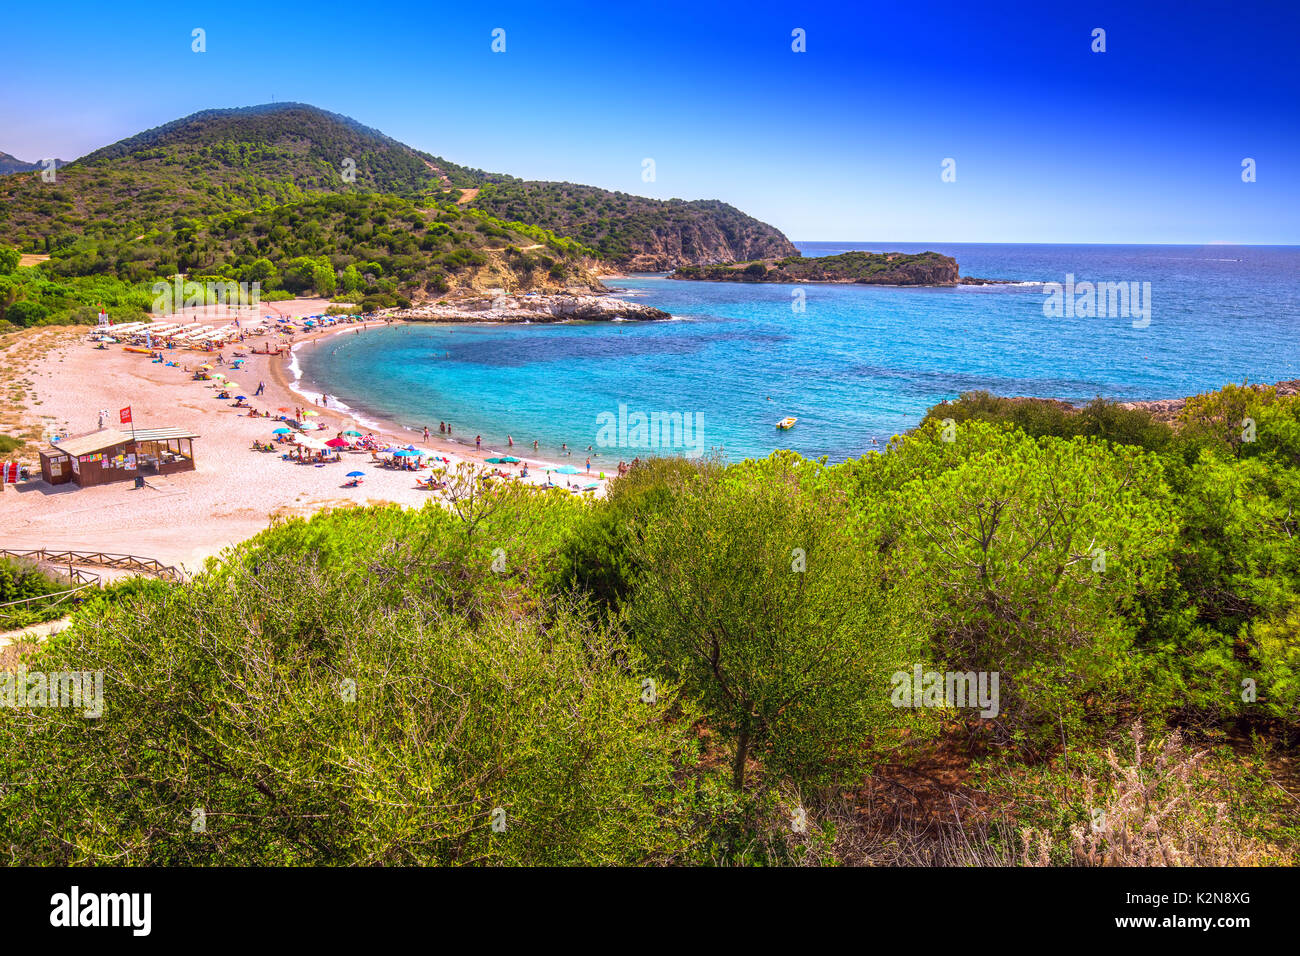 Su portu beach resort, la chía, Cerdeña, Italia, Europa. Cerdeña es la segunda isla más grande en el mar mediterráneo. Foto de stock